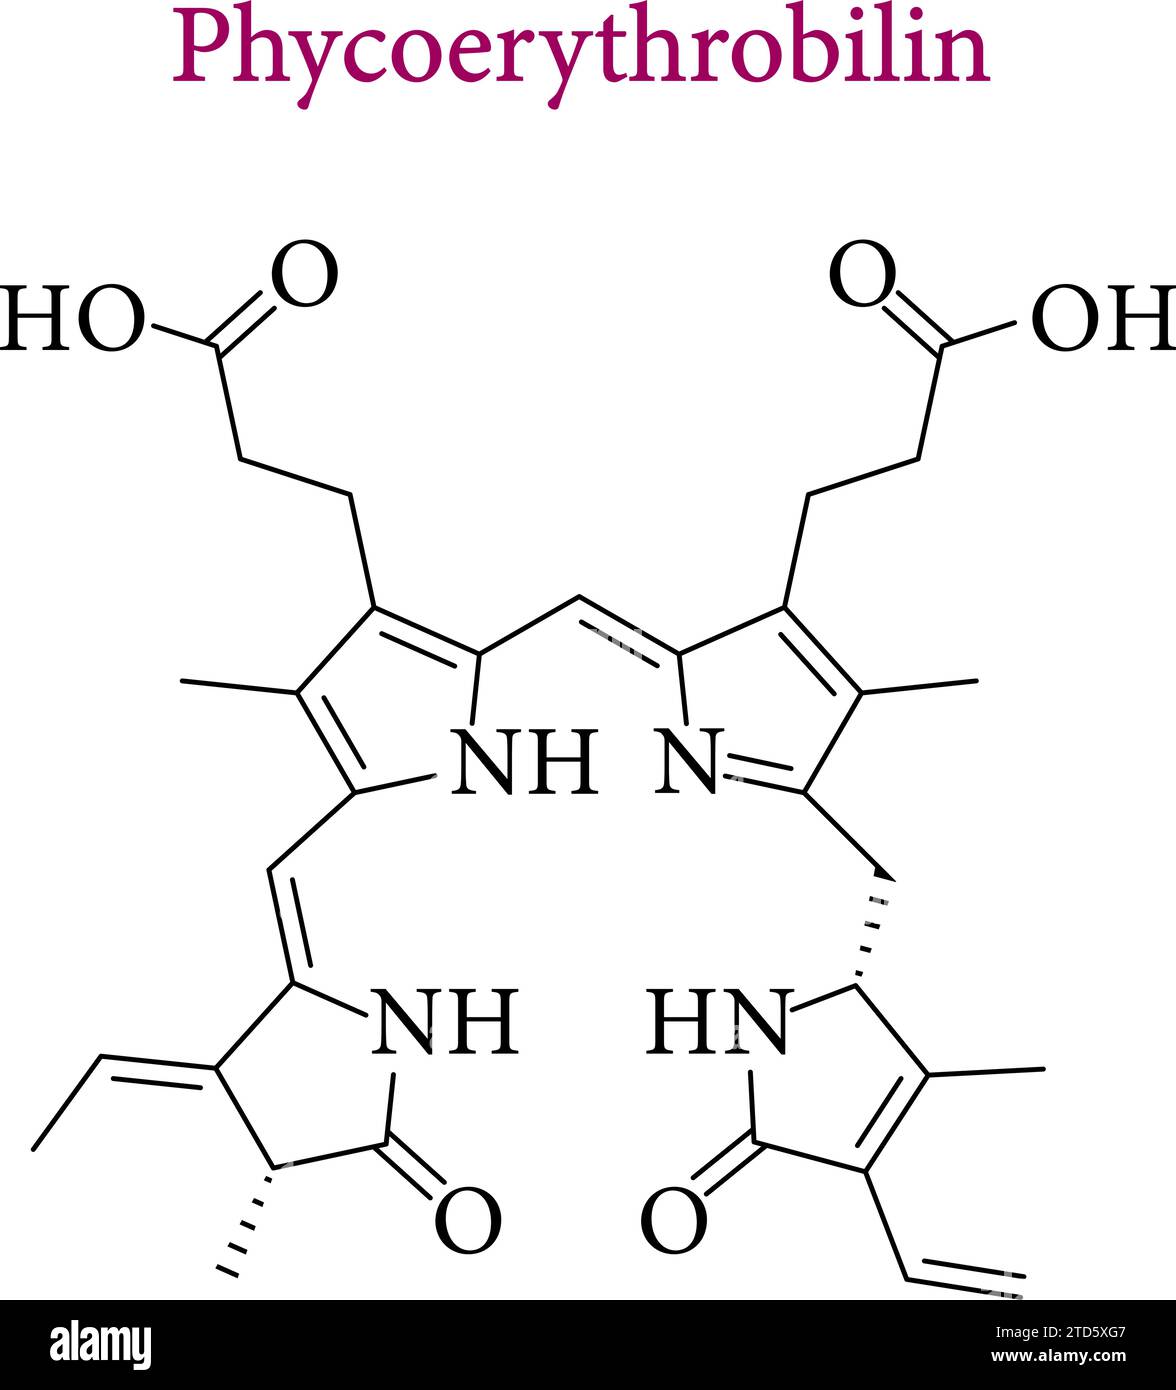 Diagramma chimico della fitoritrobilina.illustrazione vettoriale. Illustrazione Vettoriale